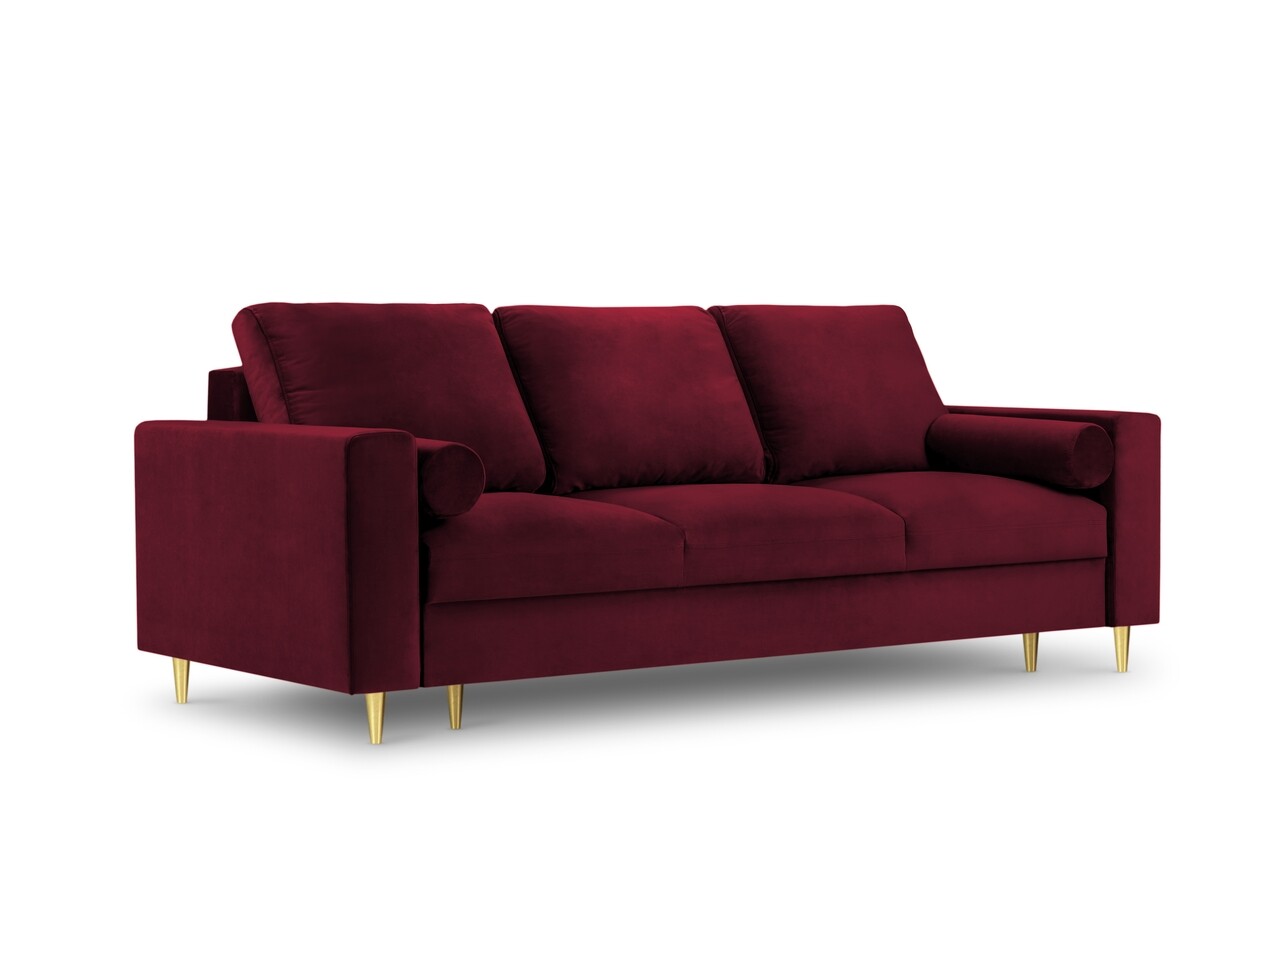 Mimosa kihúzhatós kanapé, mazzini sofas, 3 személyes, tárolóládával, 220x100x92 cm, bársony, piros